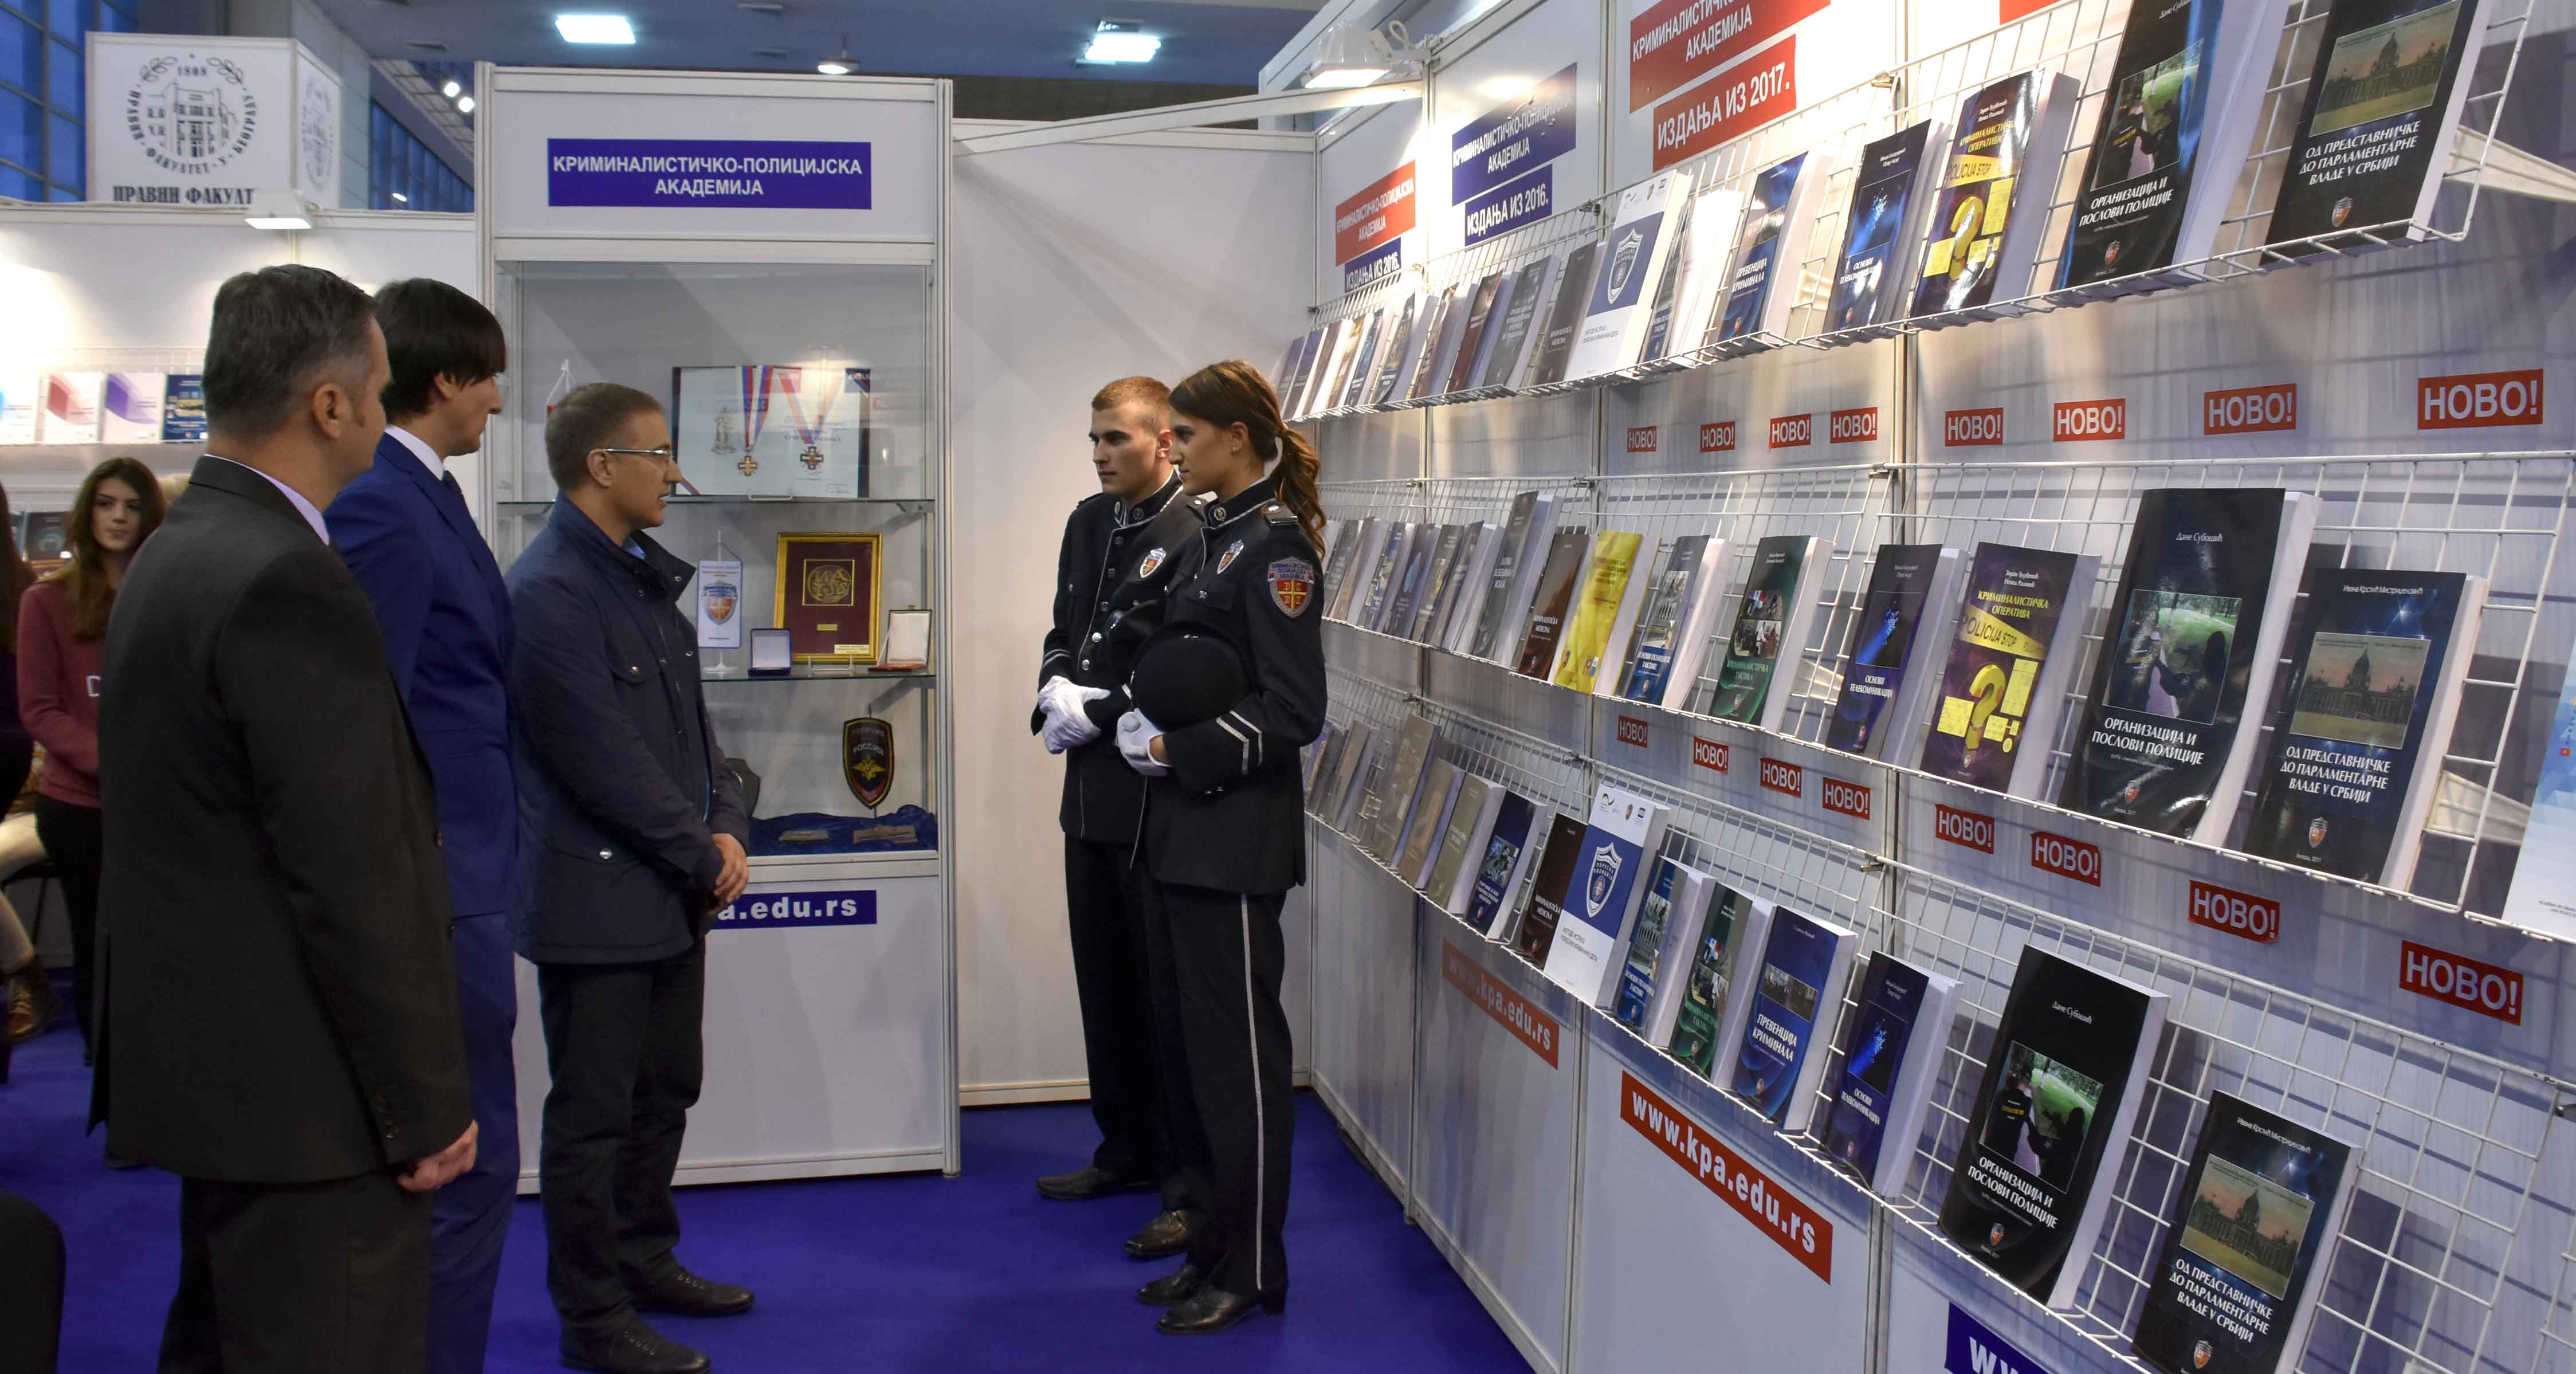 Ministar Stefanović obišao štand Kriminalističko-policijske akademije na Međunarodnom sajmu knjiga